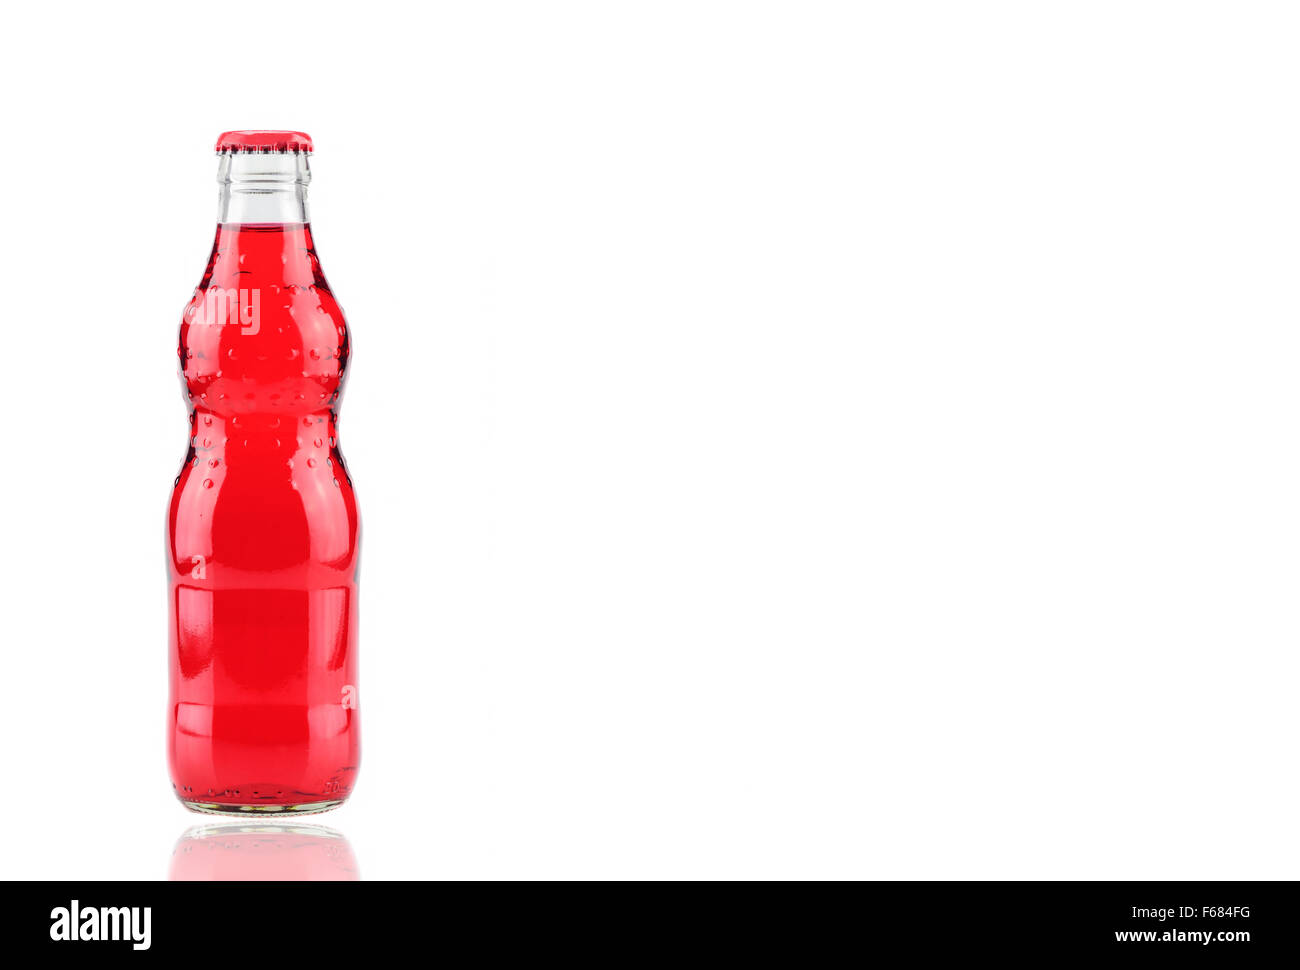 Bottiglia di fragola Fanta (coca cola) vetro soda isolato su sfondo bianco Foto Stock